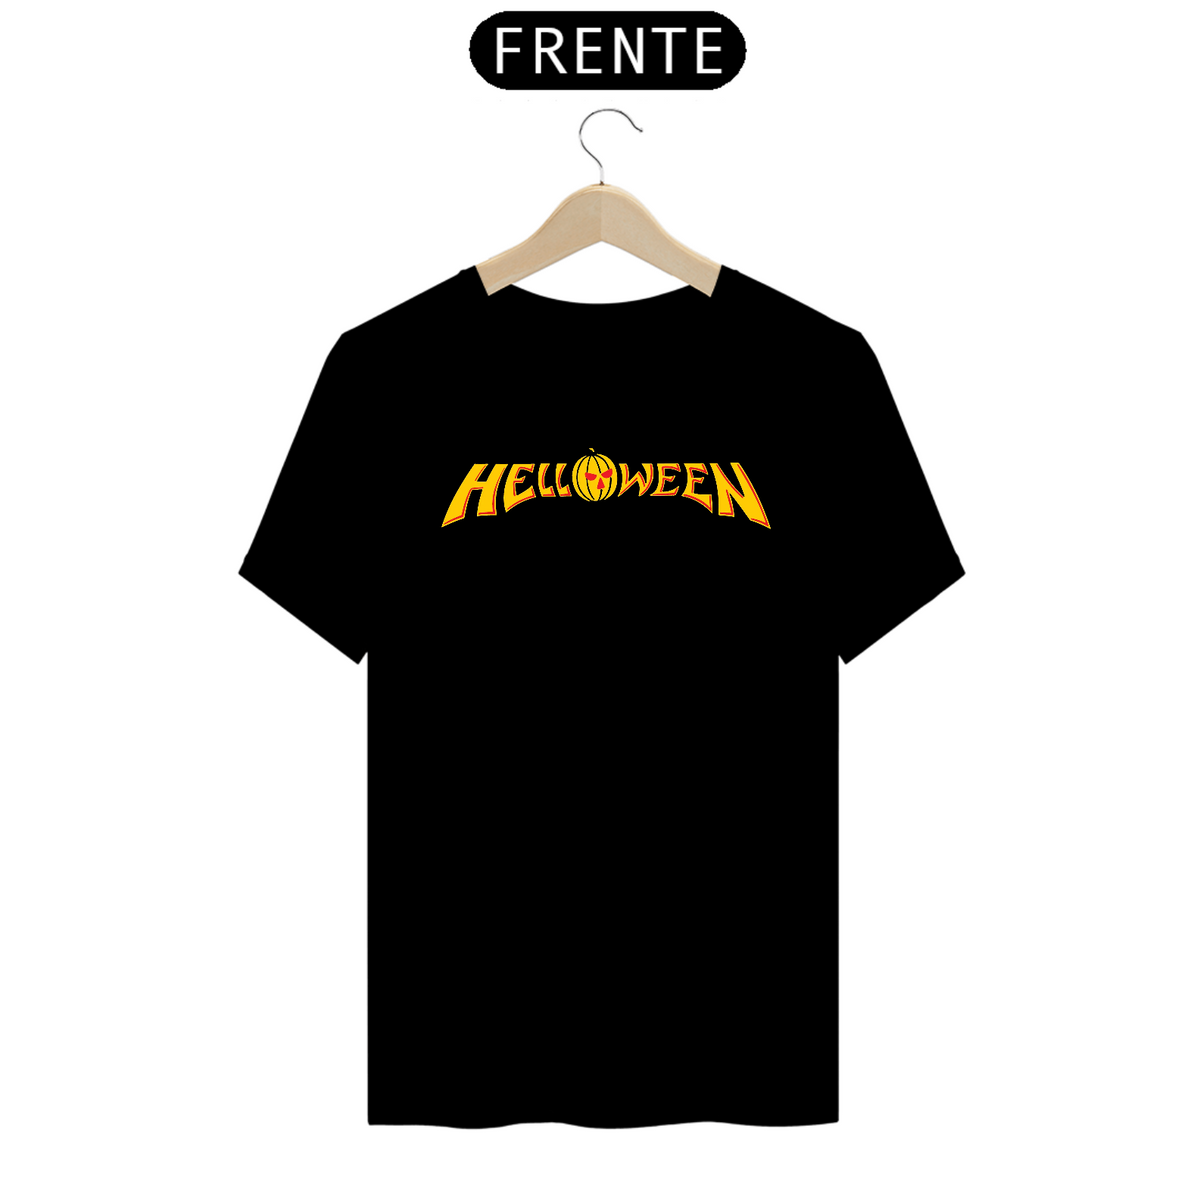 Nome do produto: Camisa - Helloween